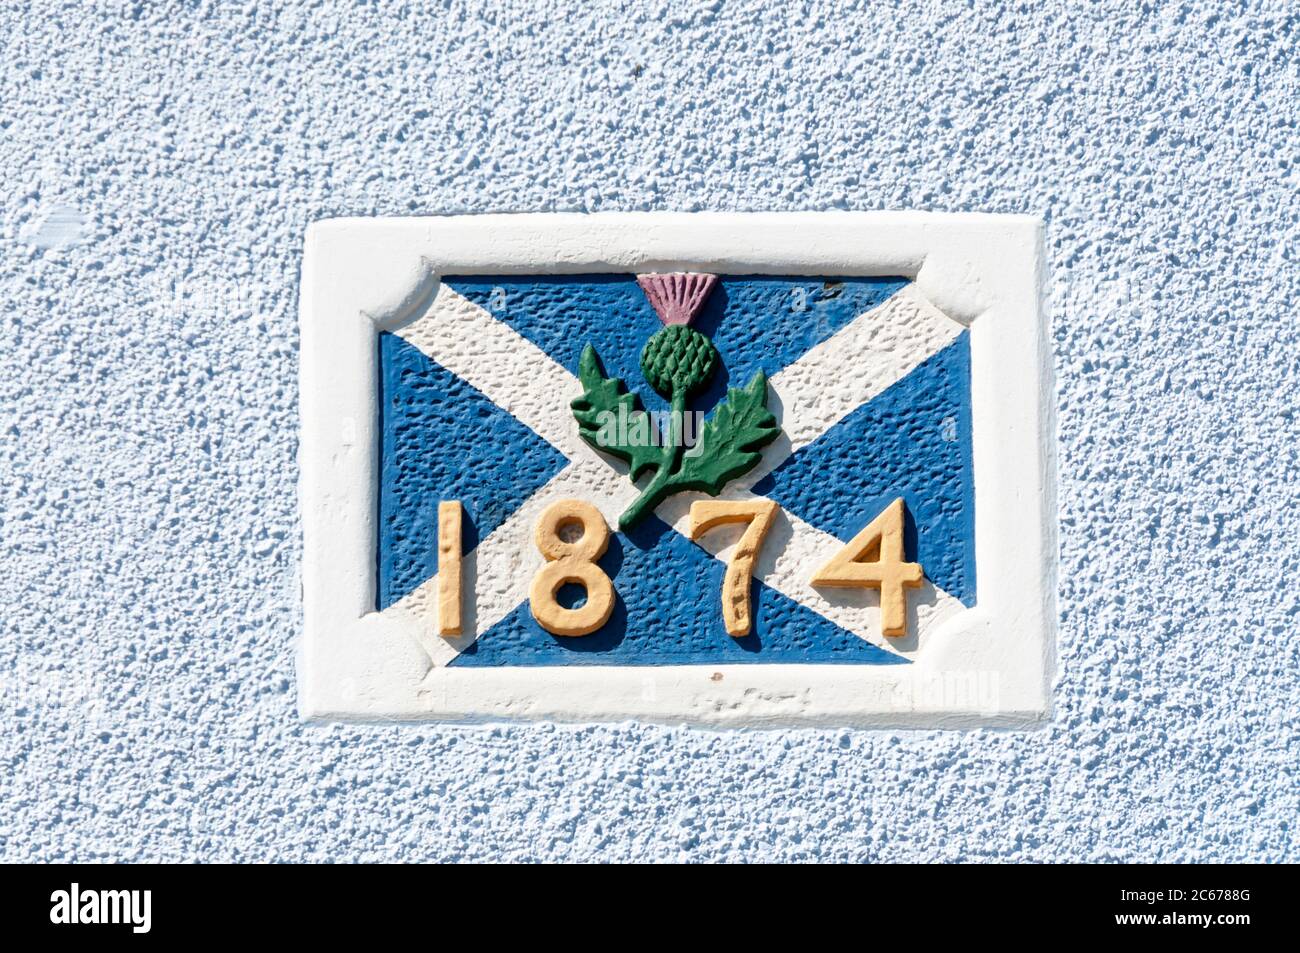 Bandiera scozzese, il salstire, e il simbolo del fischio su una targa a 1874 date nel muro di Thistle House, Pittenweem nel Neuk orientale di Fife. Foto Stock